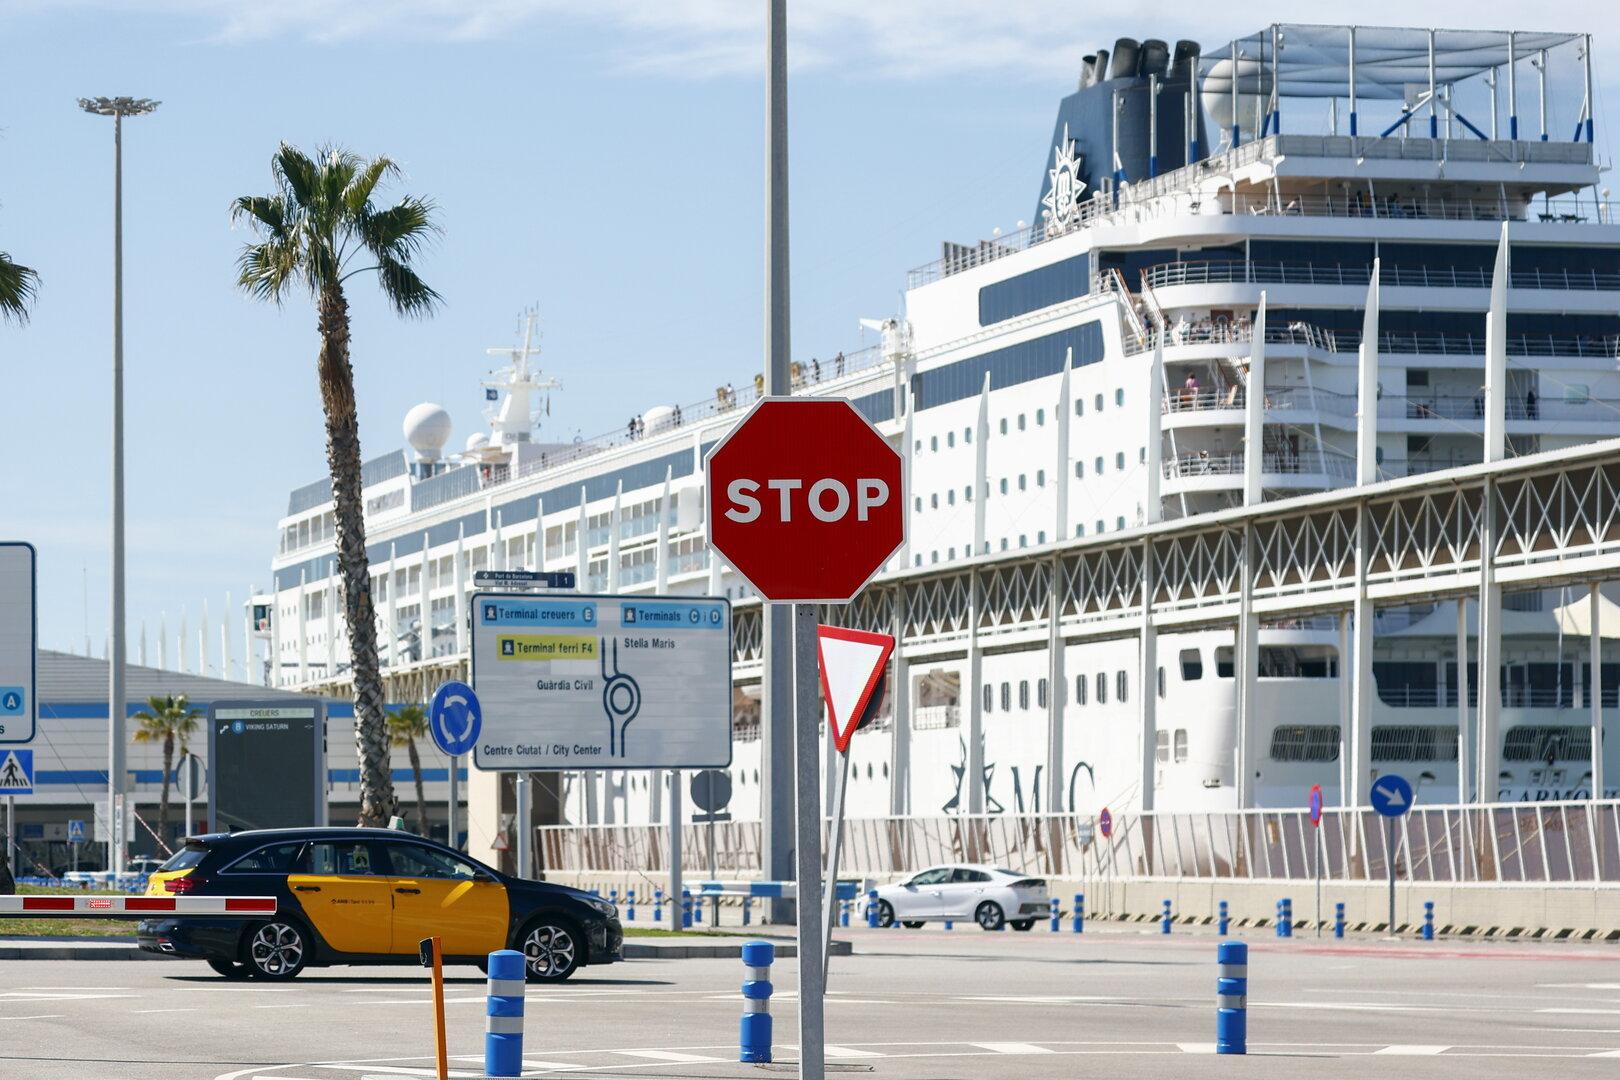 Gefälschte Visa: Kreuzfahrtschifft mit 1.500 Passagieren in Barcelona festgesetzt